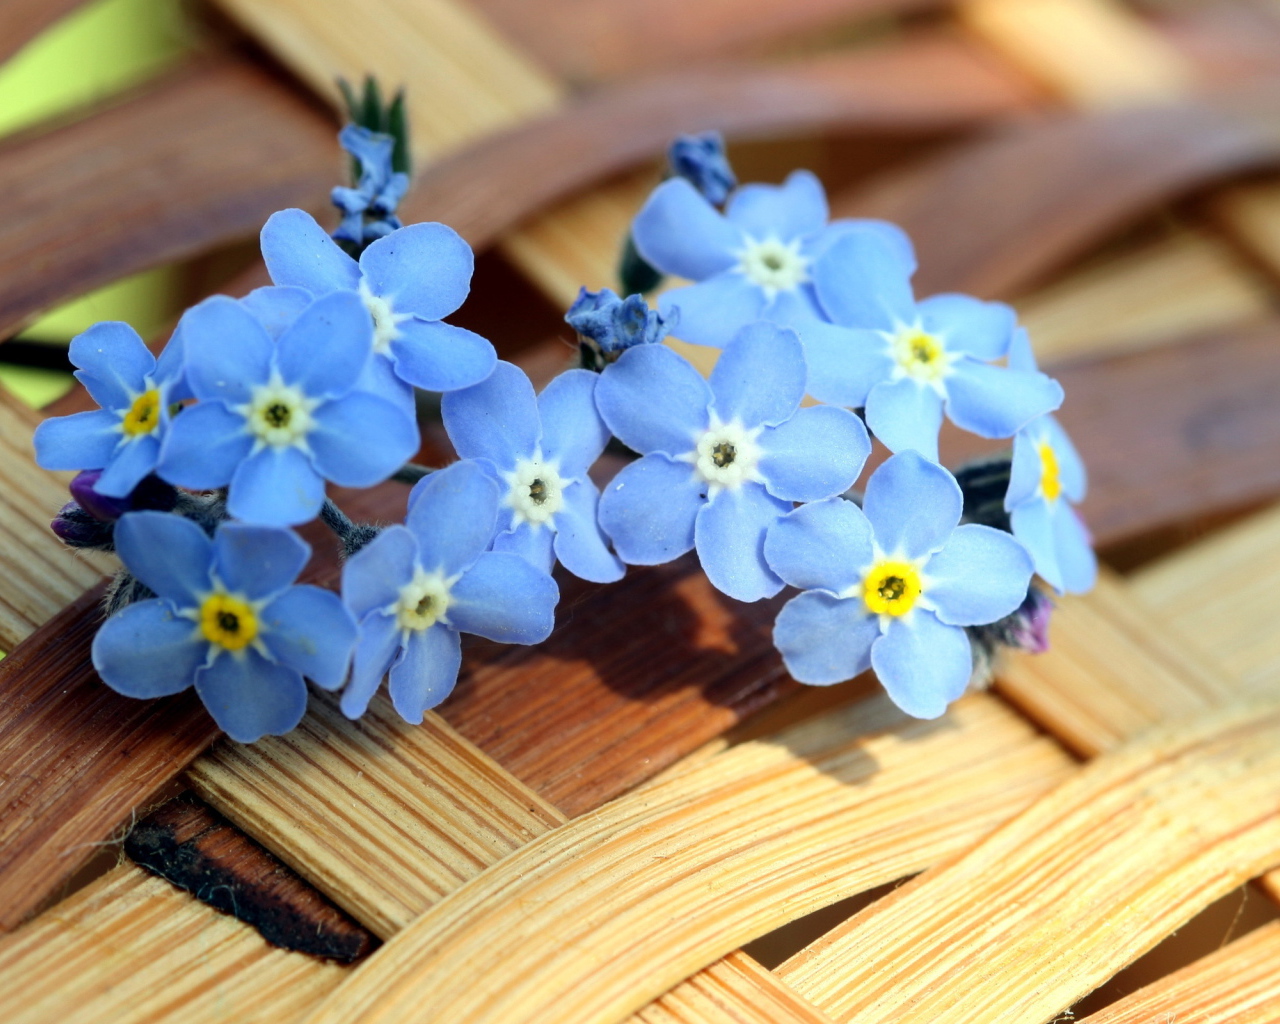 Маленькие синие цветы незабудки лежат на плетеной корзине